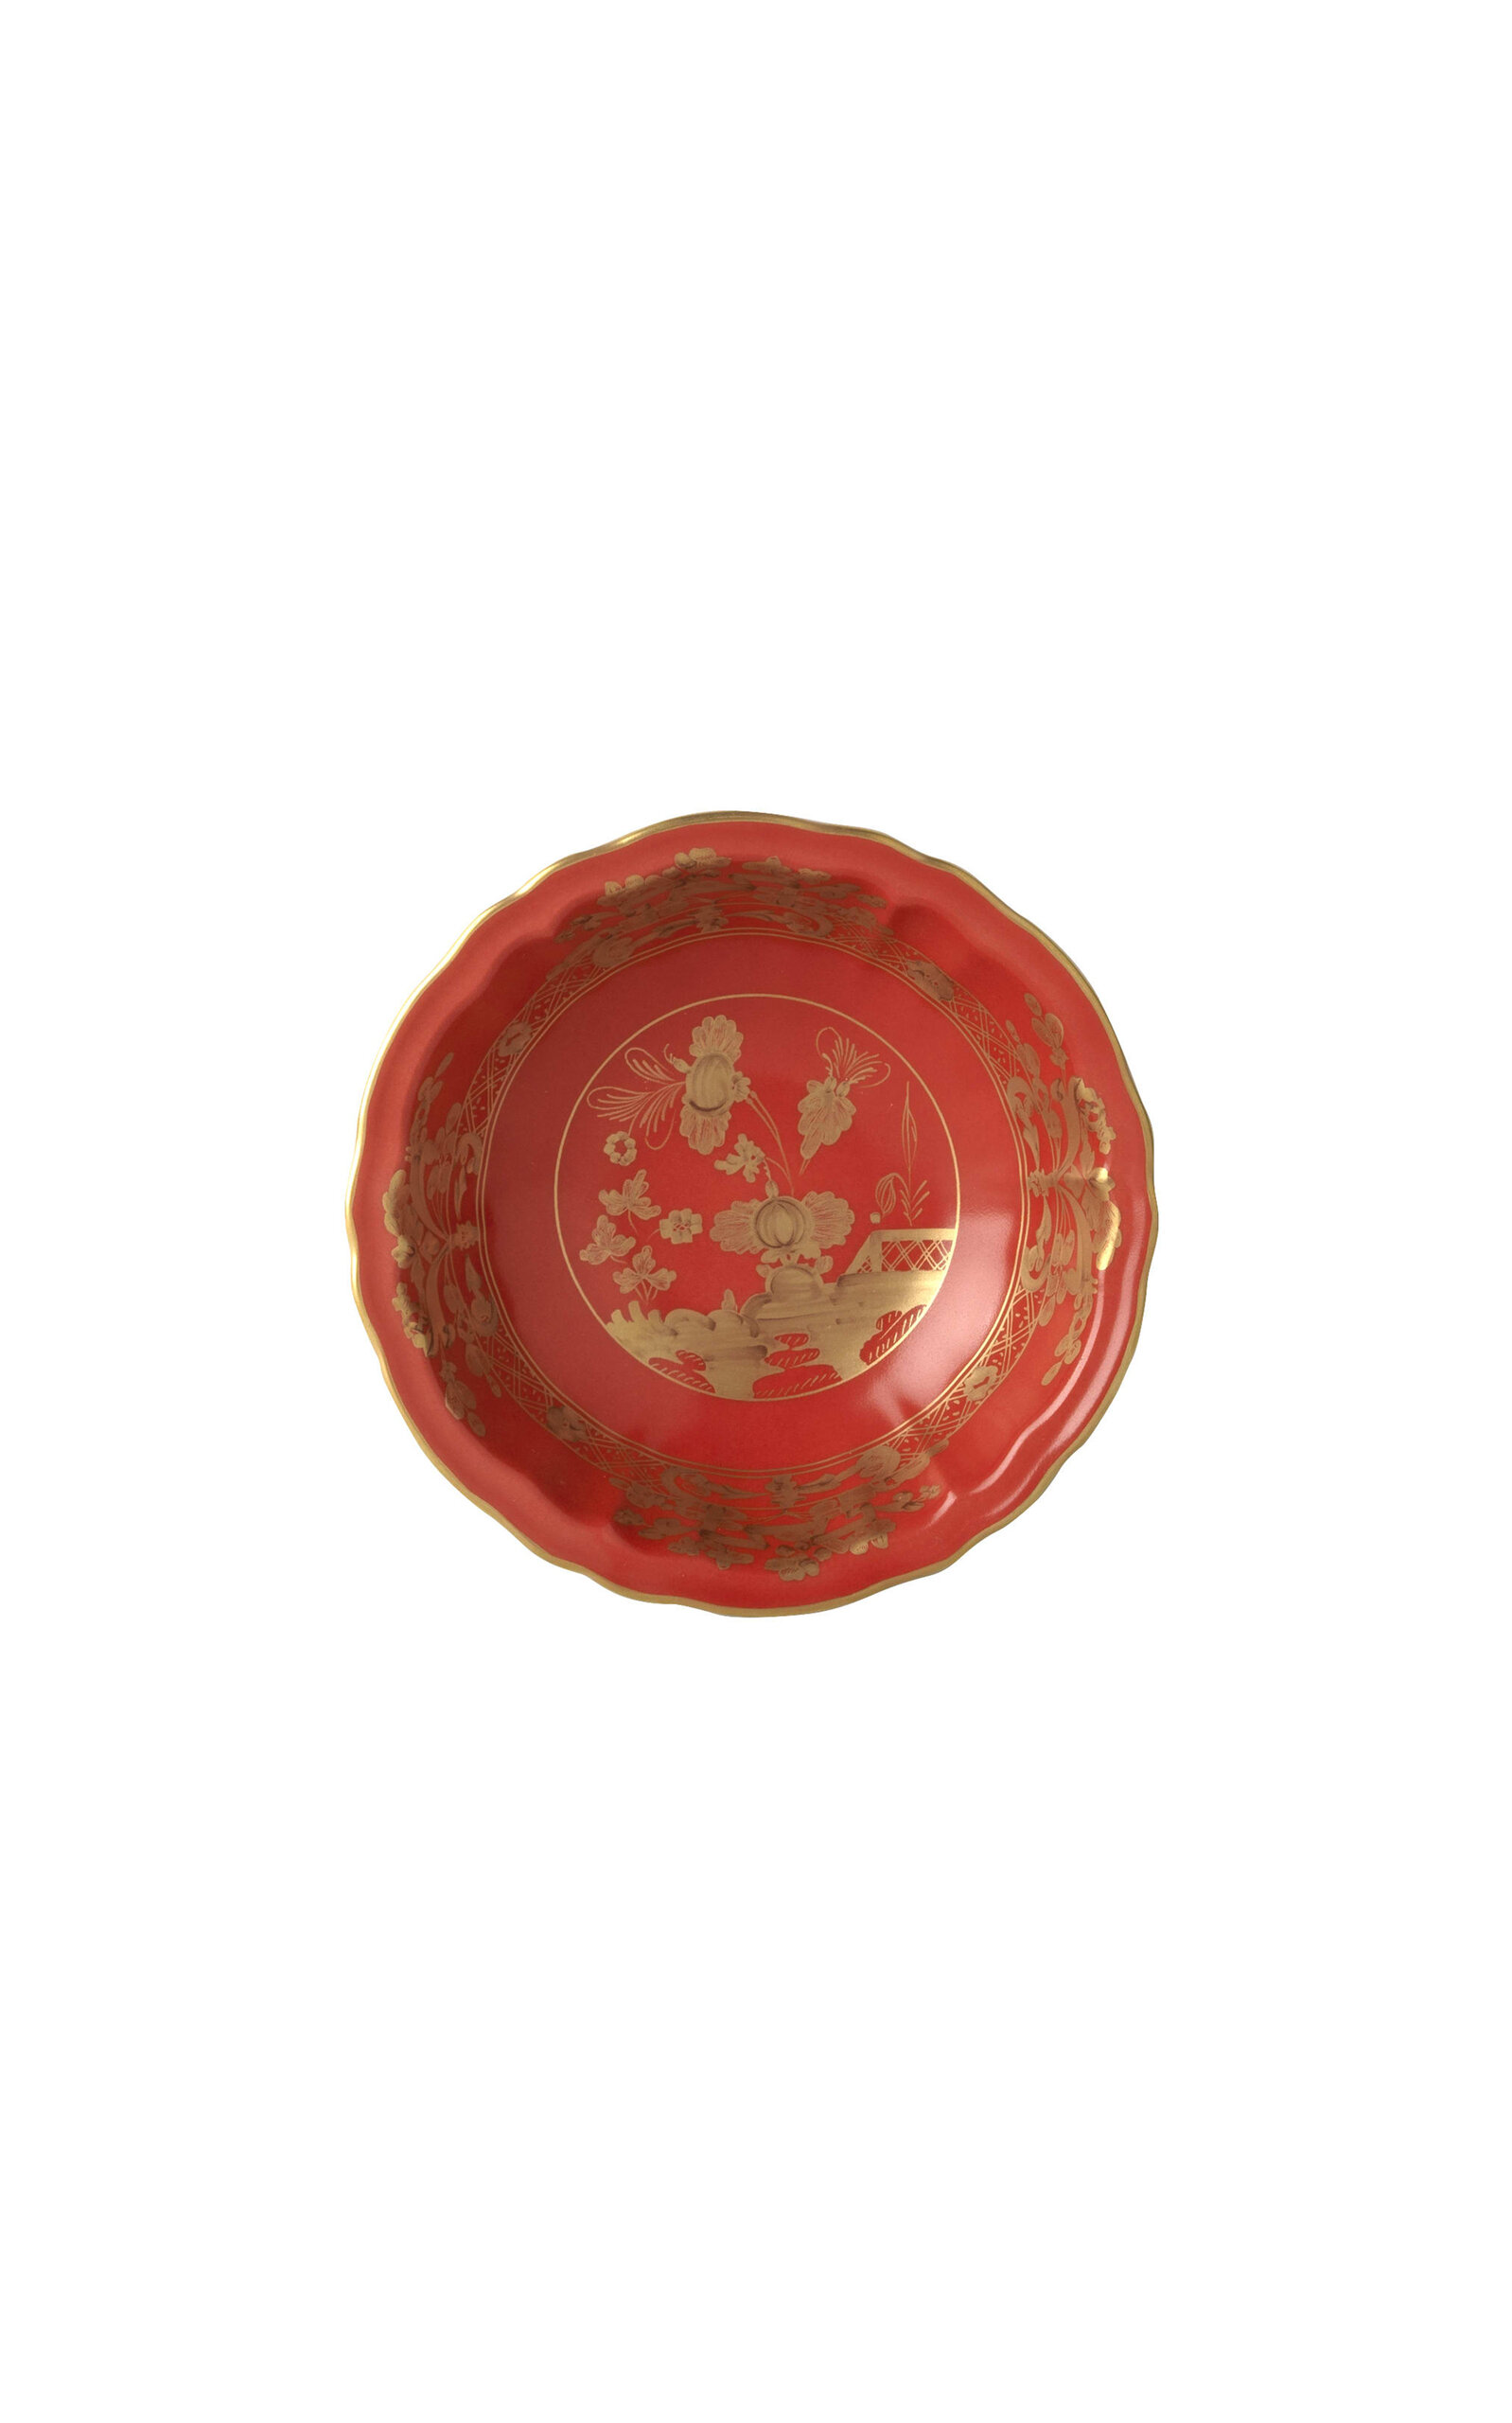 Ginori 1735 Antico Doccia Porcelain Fruit Saucer In Red